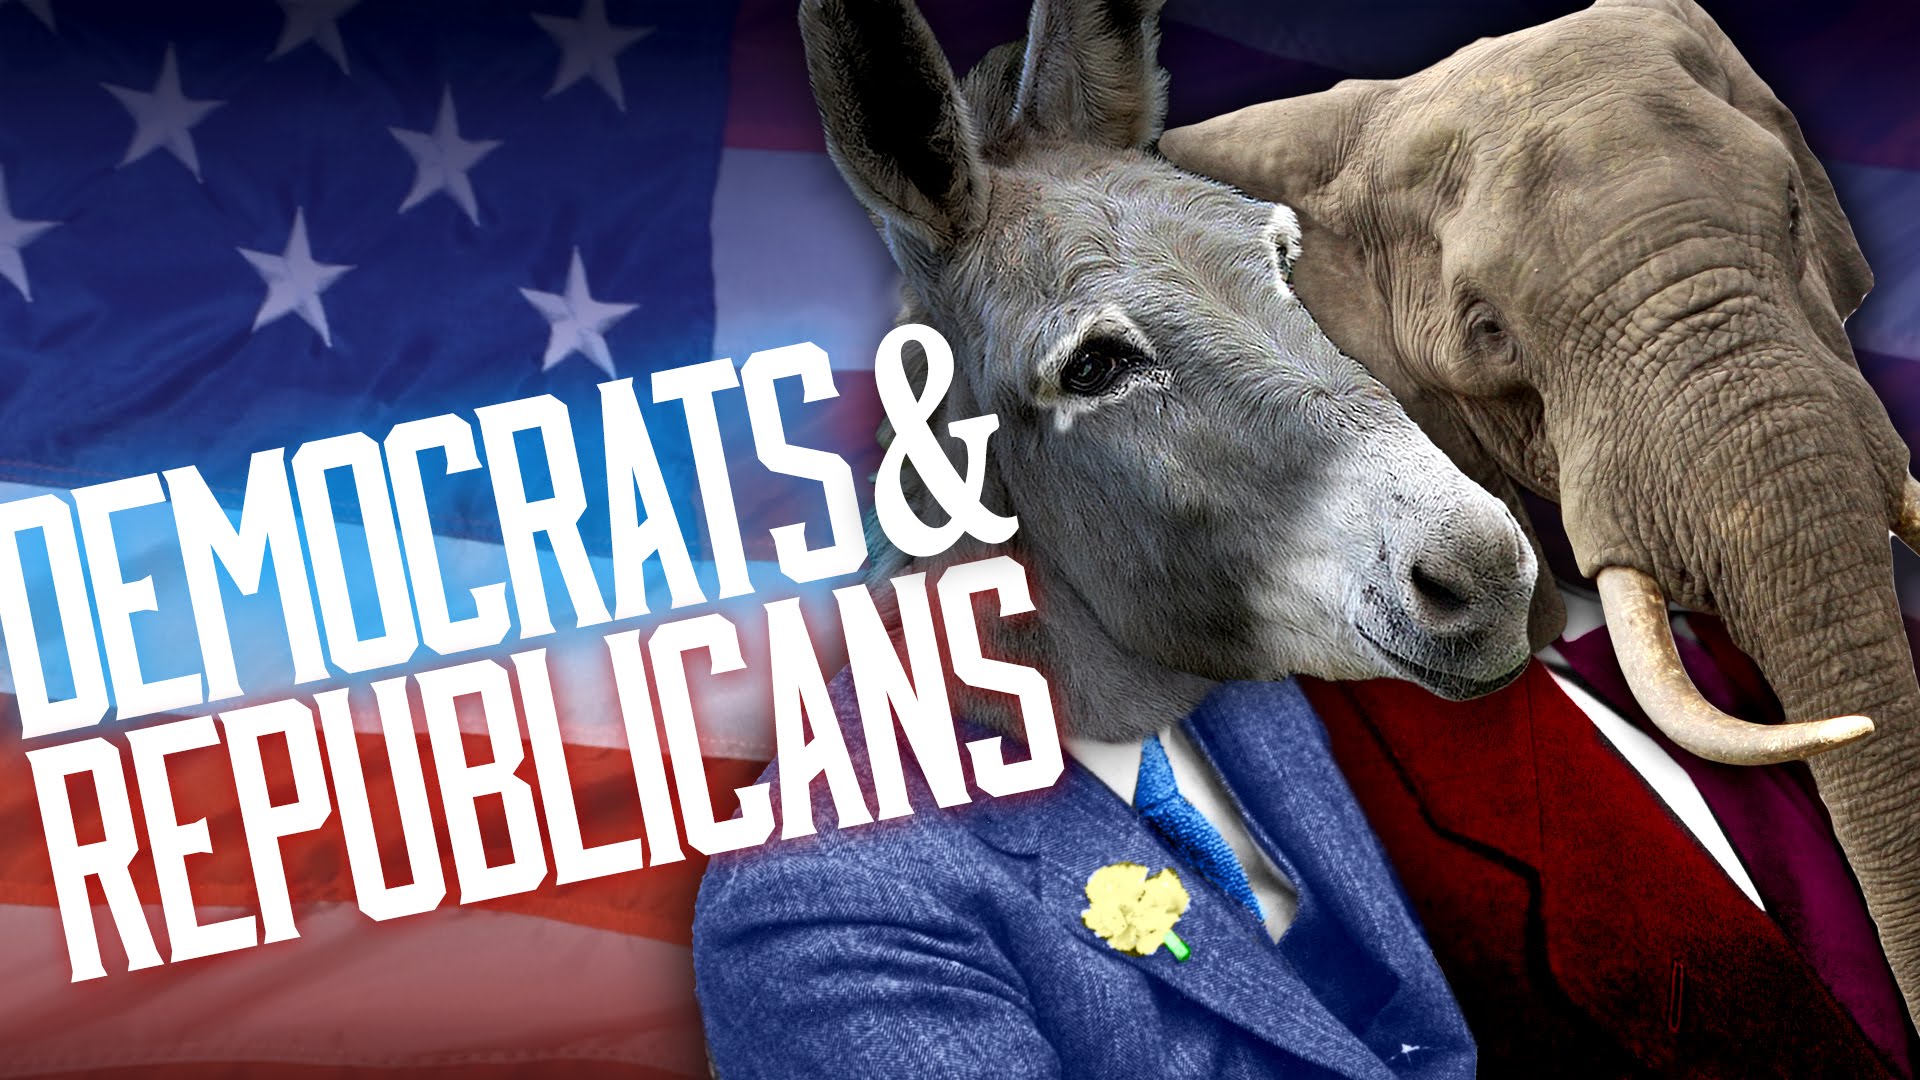 snout - Democrats& Republicans